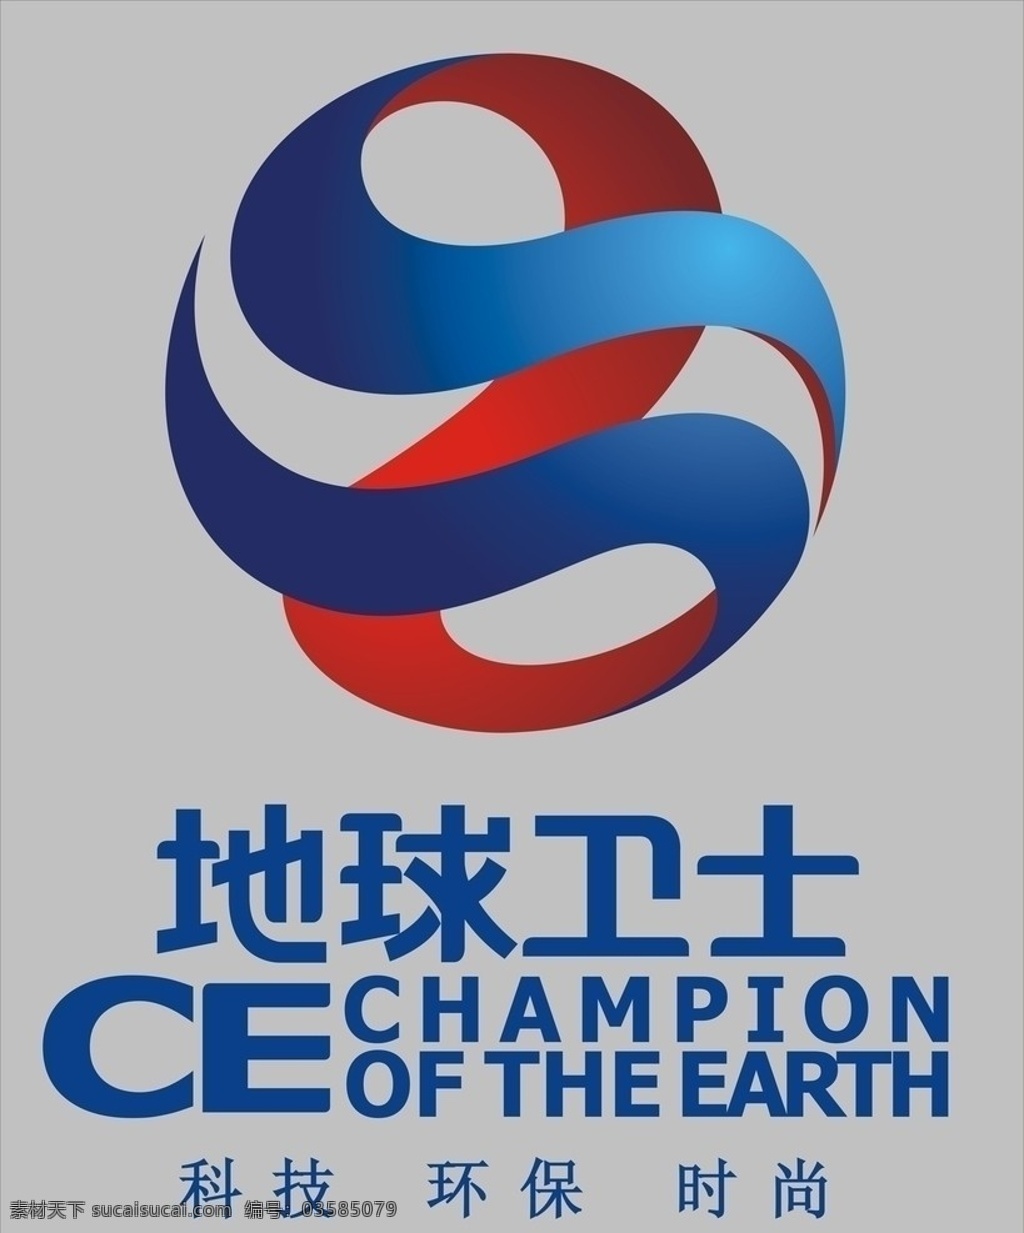 地球卫士 壁纸 企业 logo 标志 标识标志图标 矢量